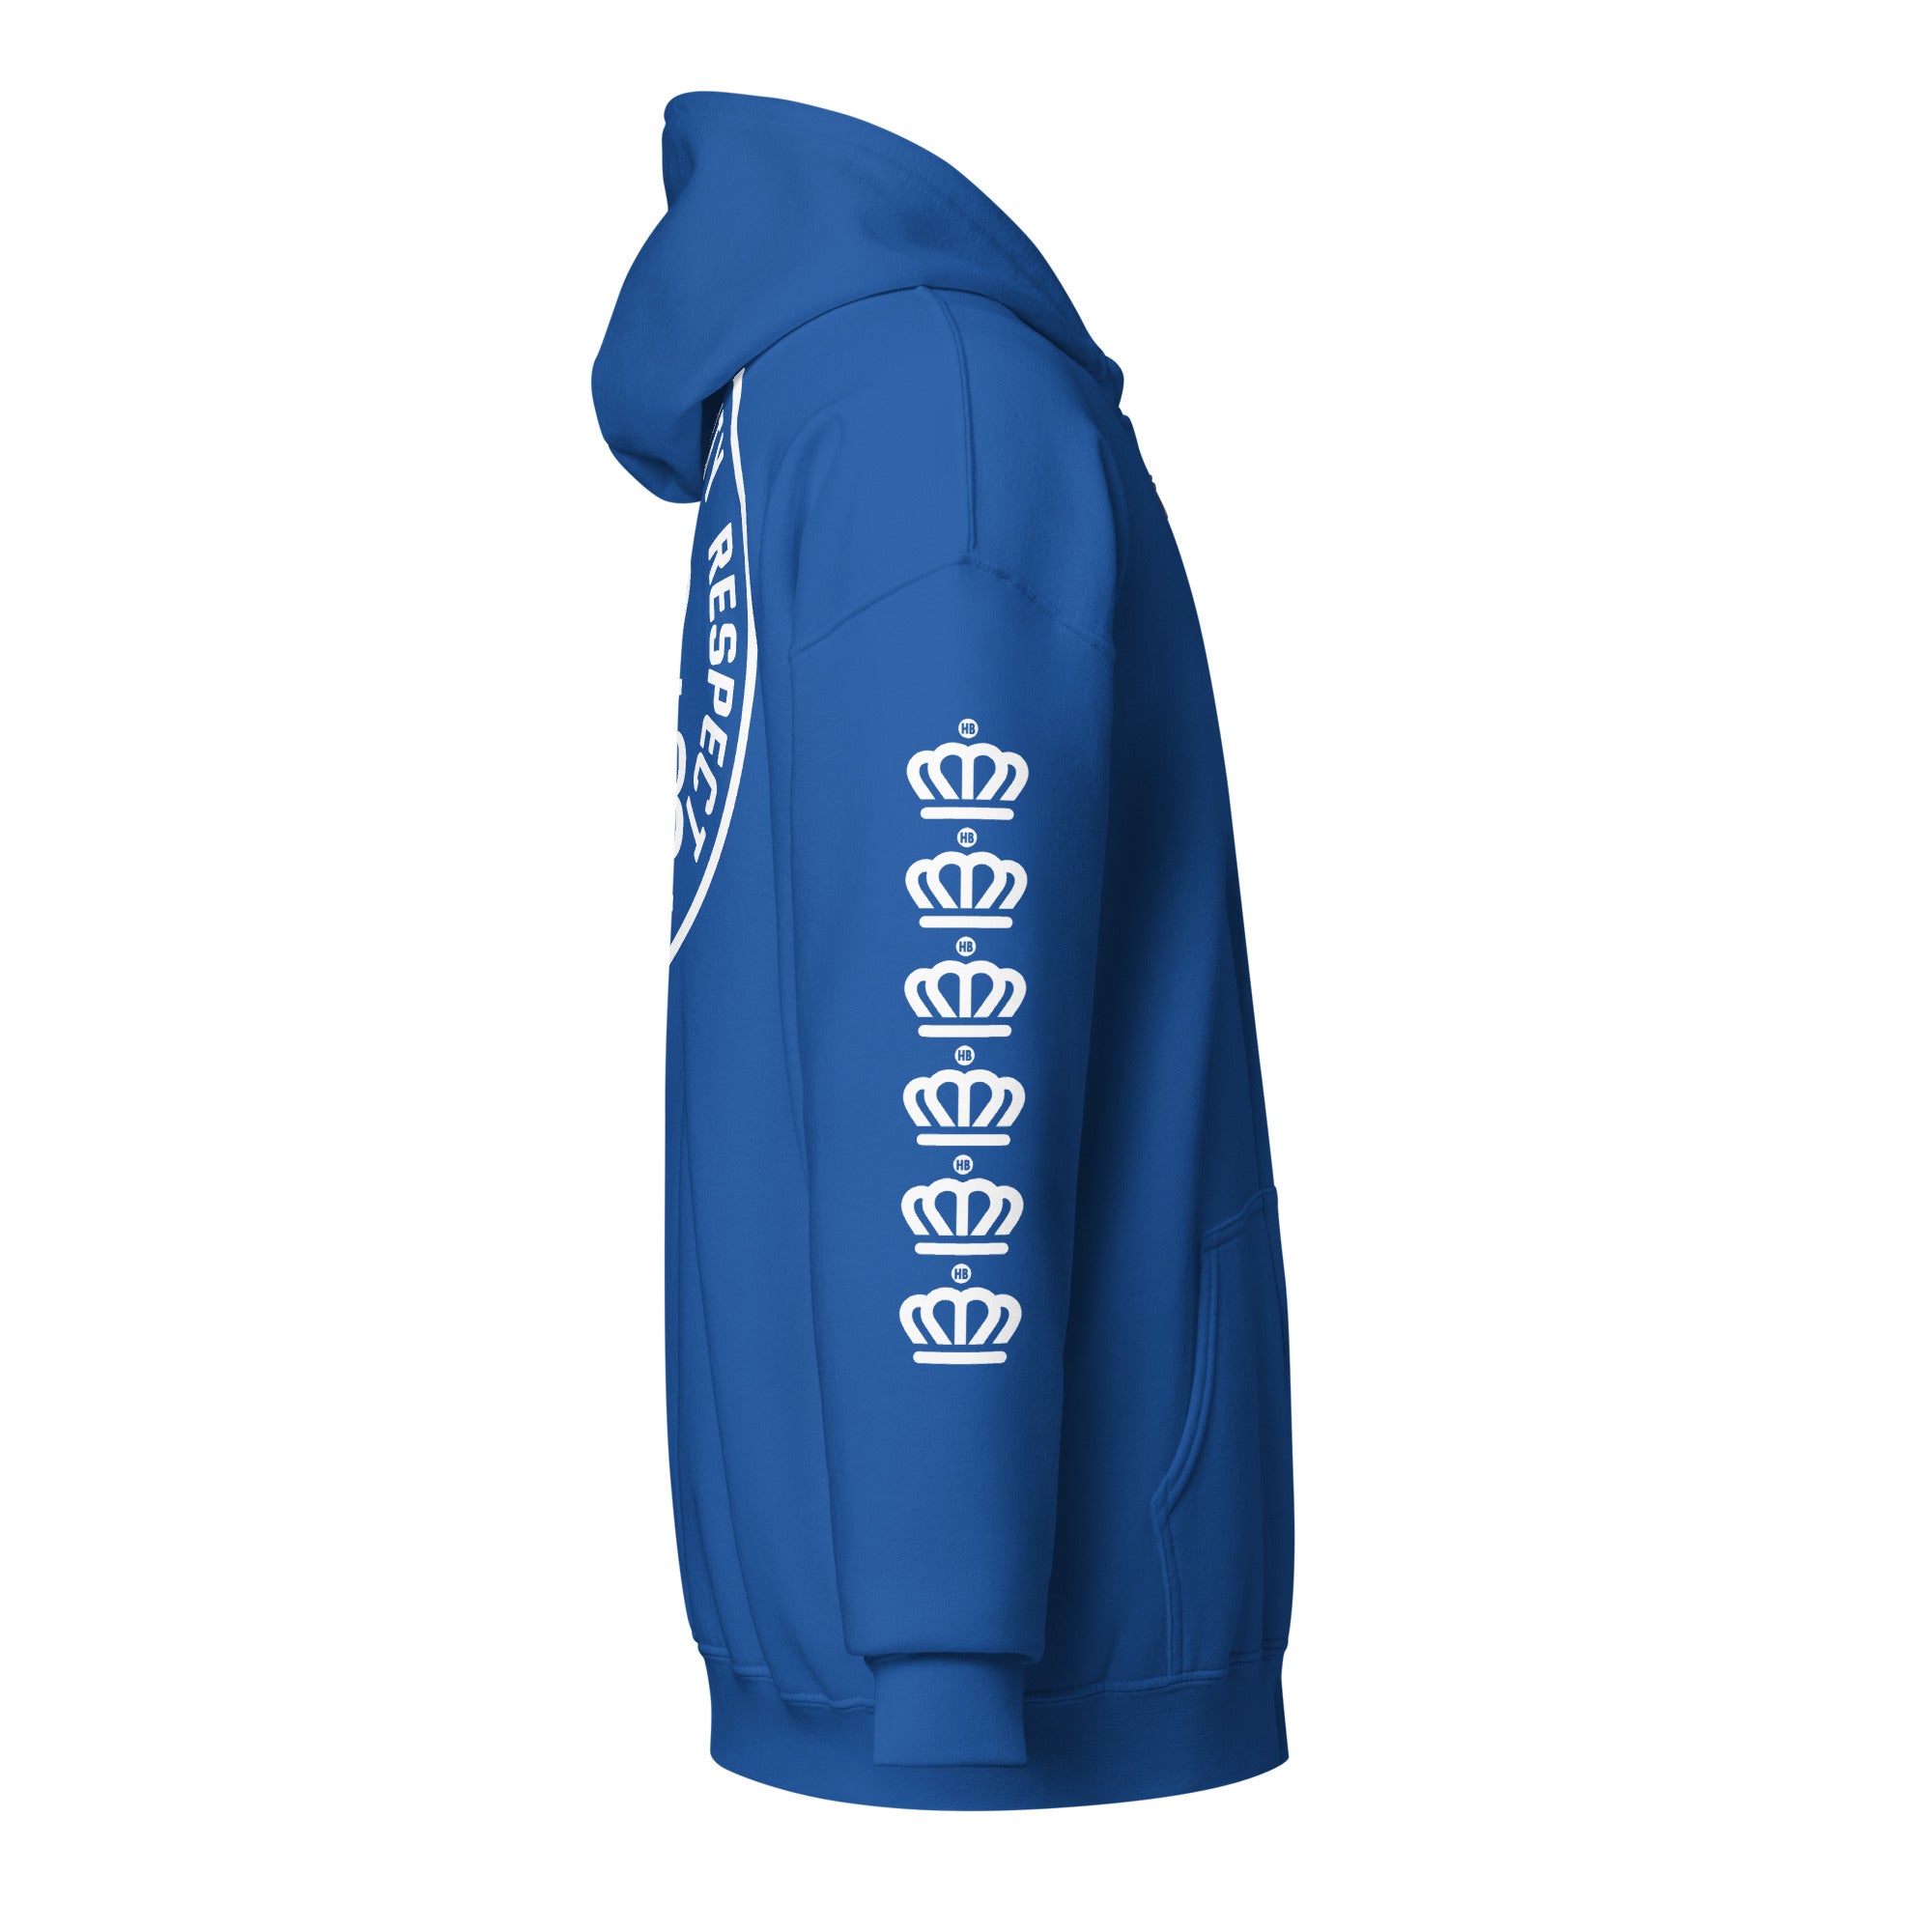 HLR Crown : Unisex heavy blend zip hoodie